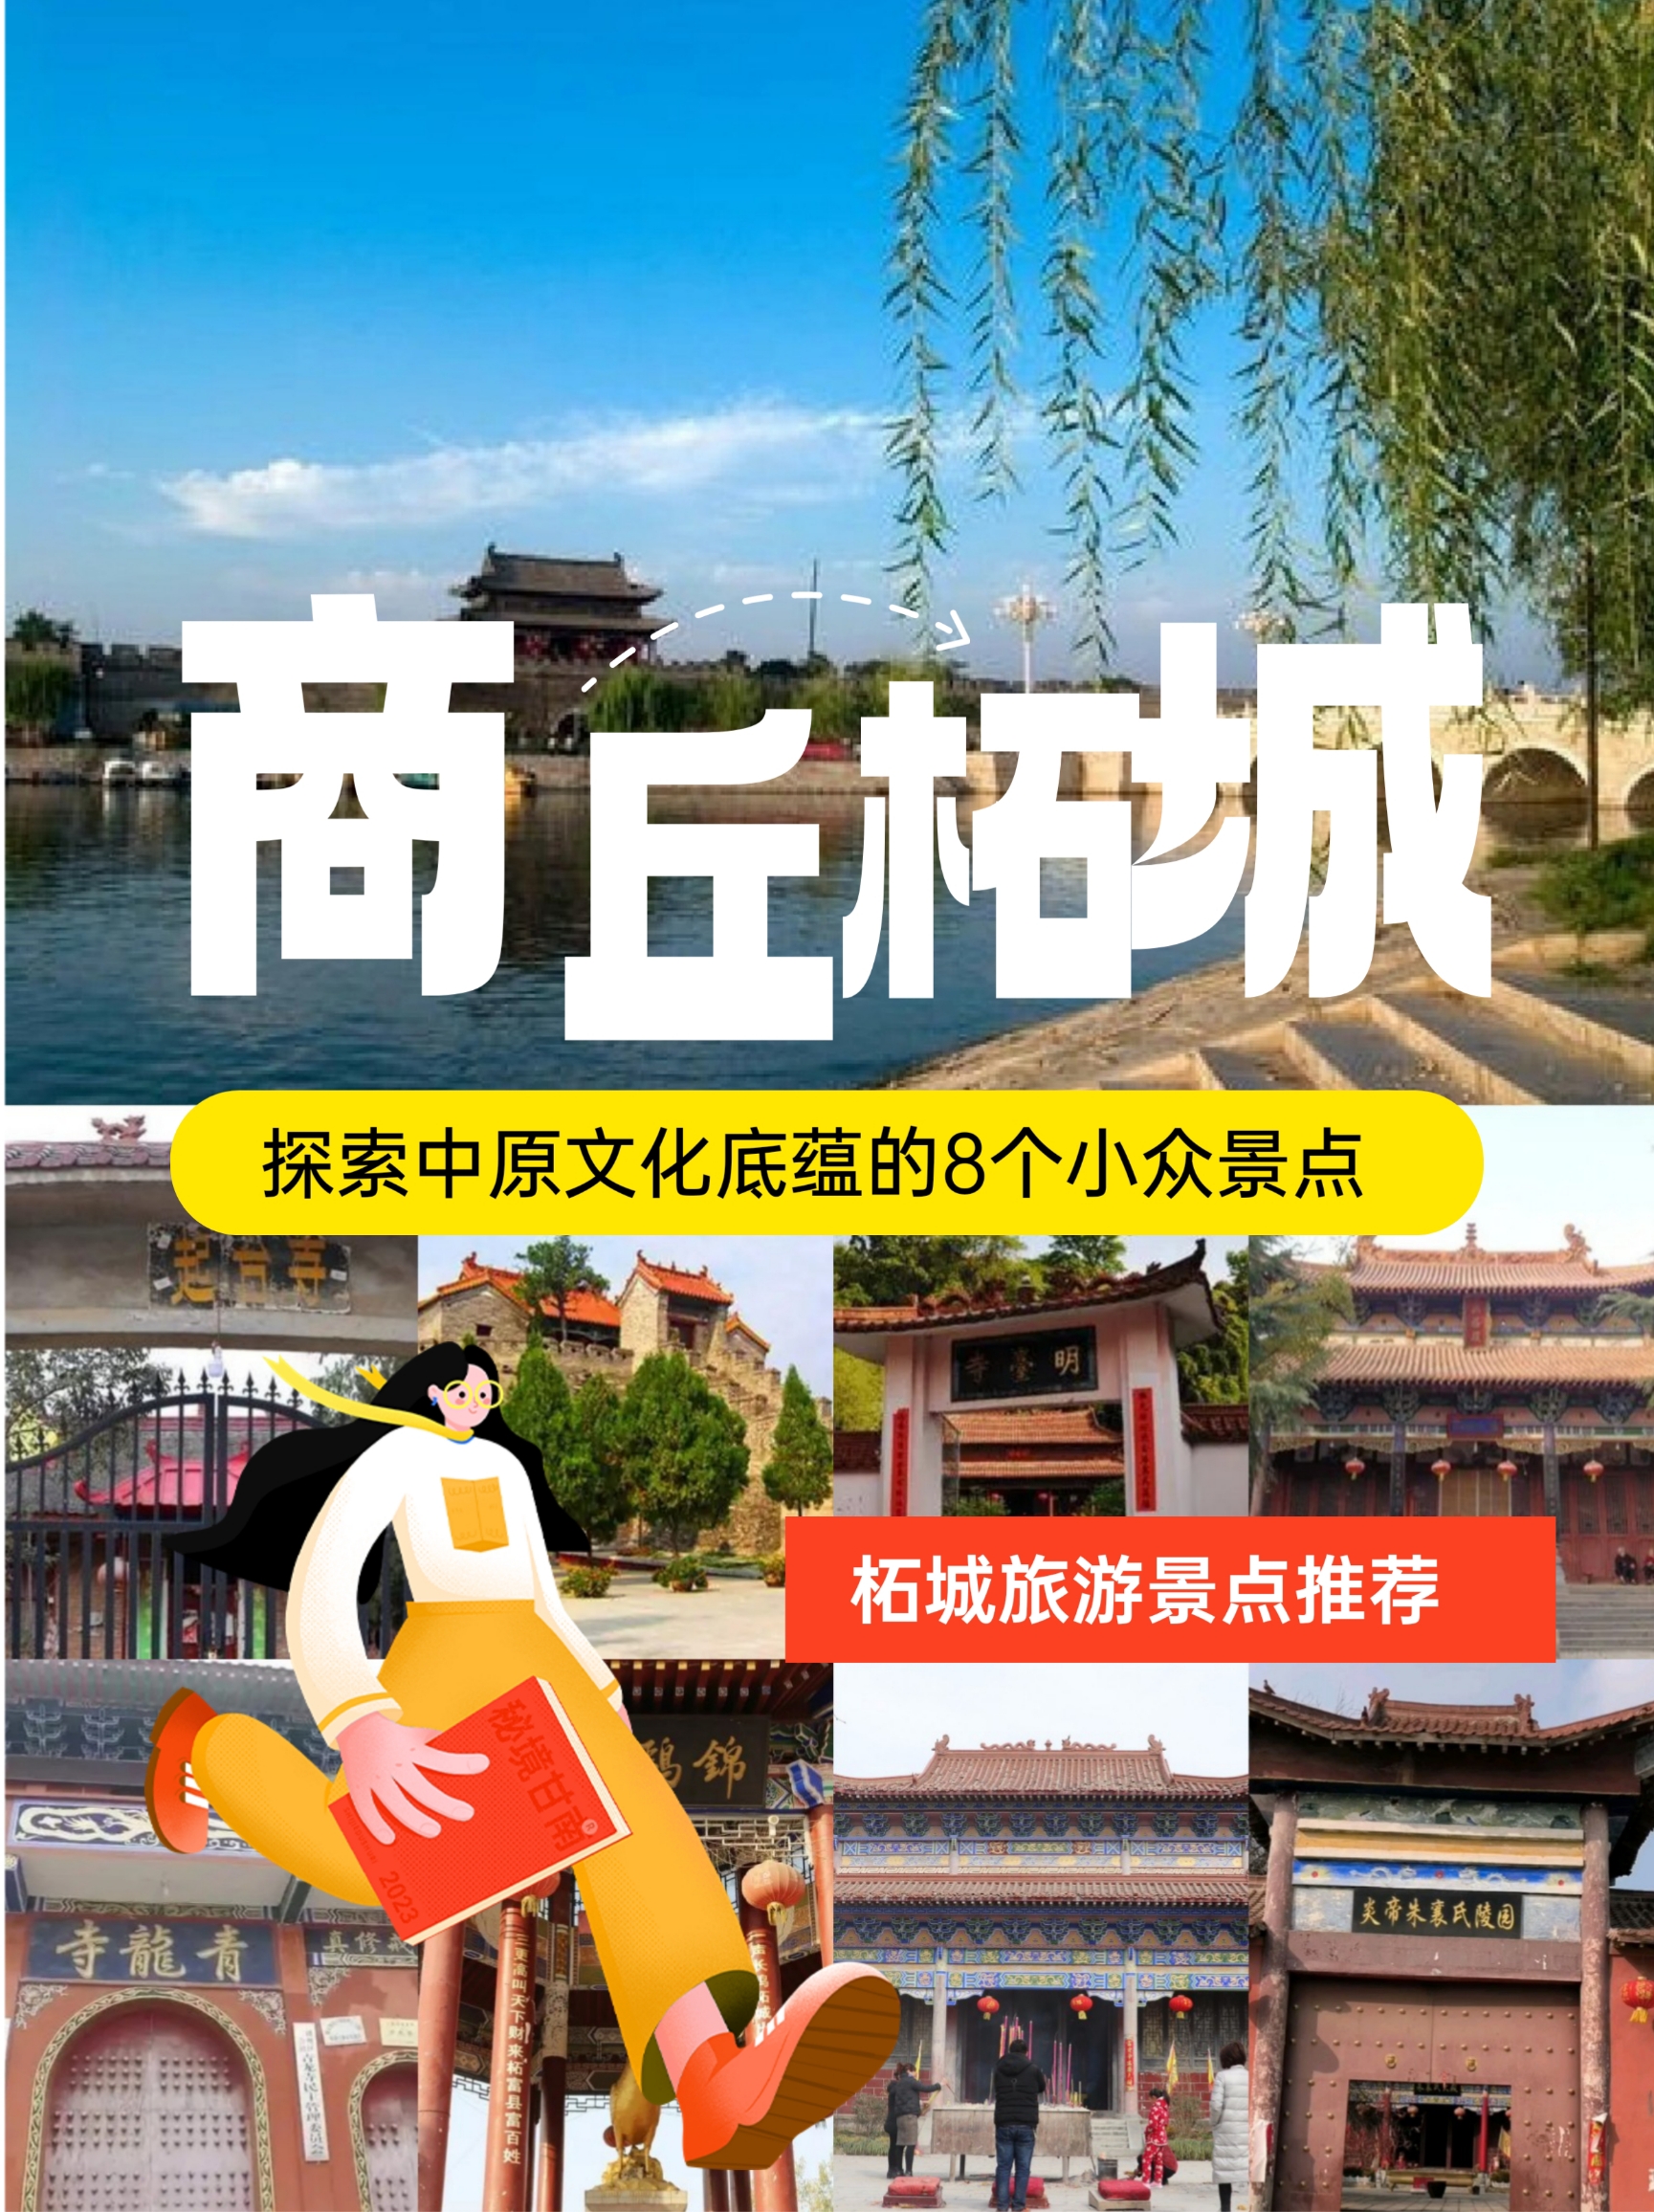 柘城旅游攻略|穿越时空 探索柘城历史文化之旅的8个小众景点